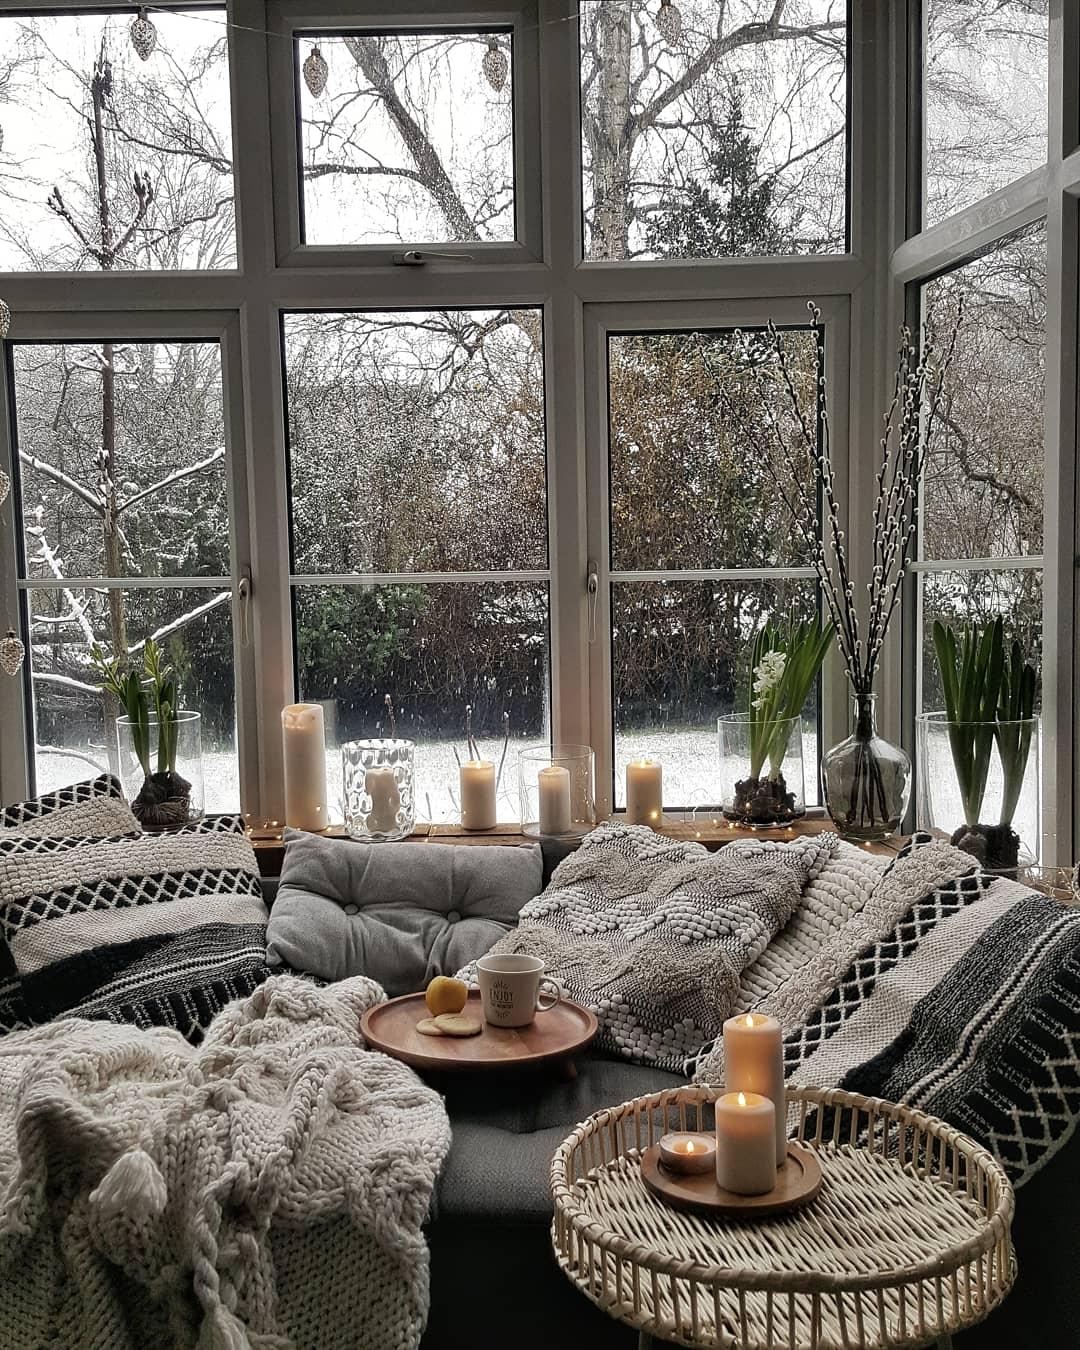 Schnee im Februar...
#interior #hygge #homedecor #wohnzimmer #altbau #england